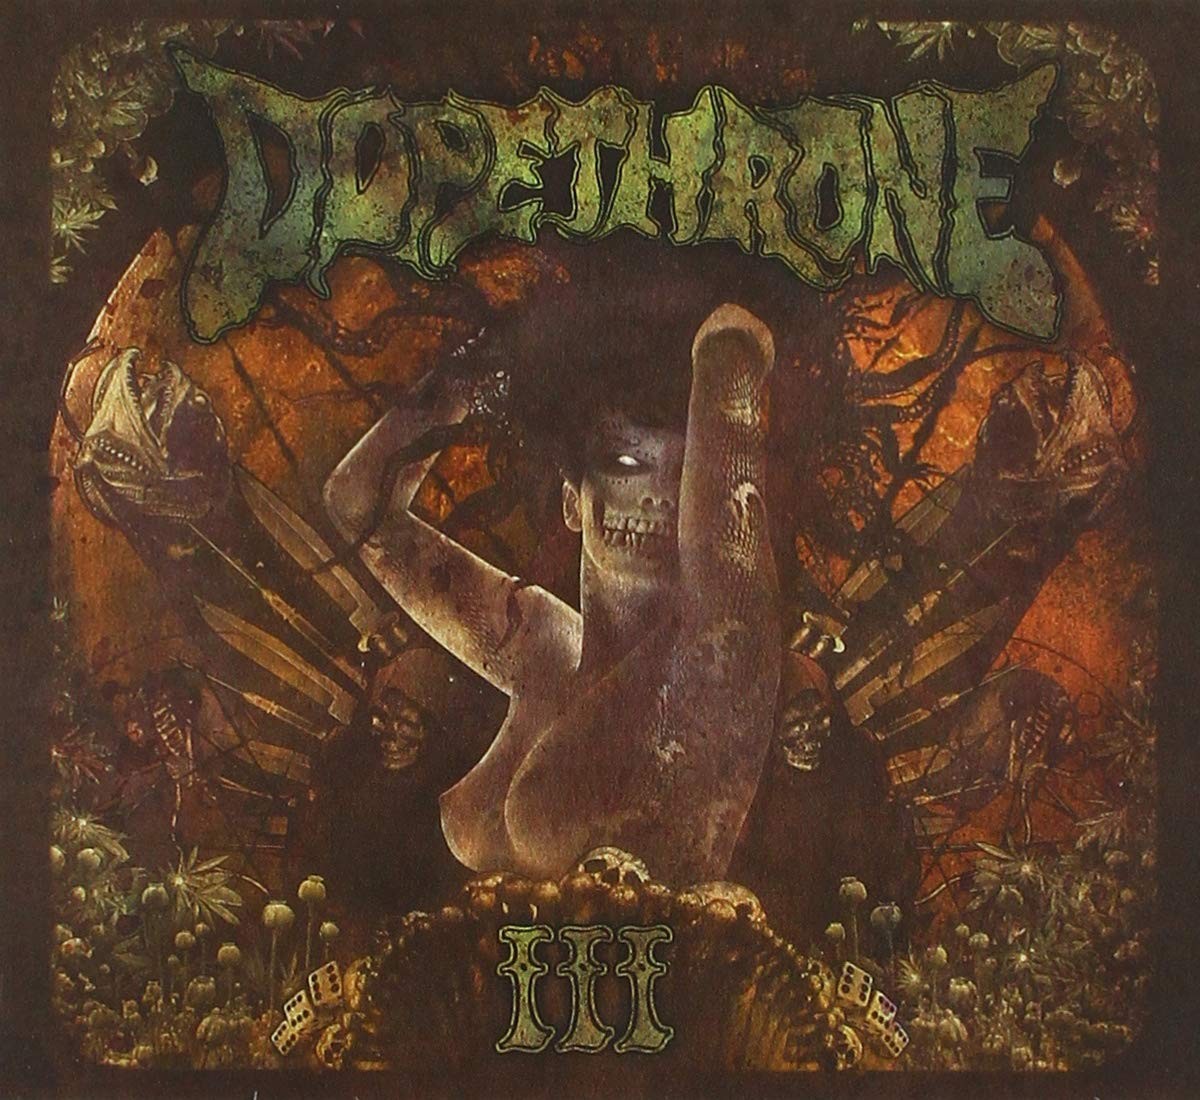 Dopethrone - Iii